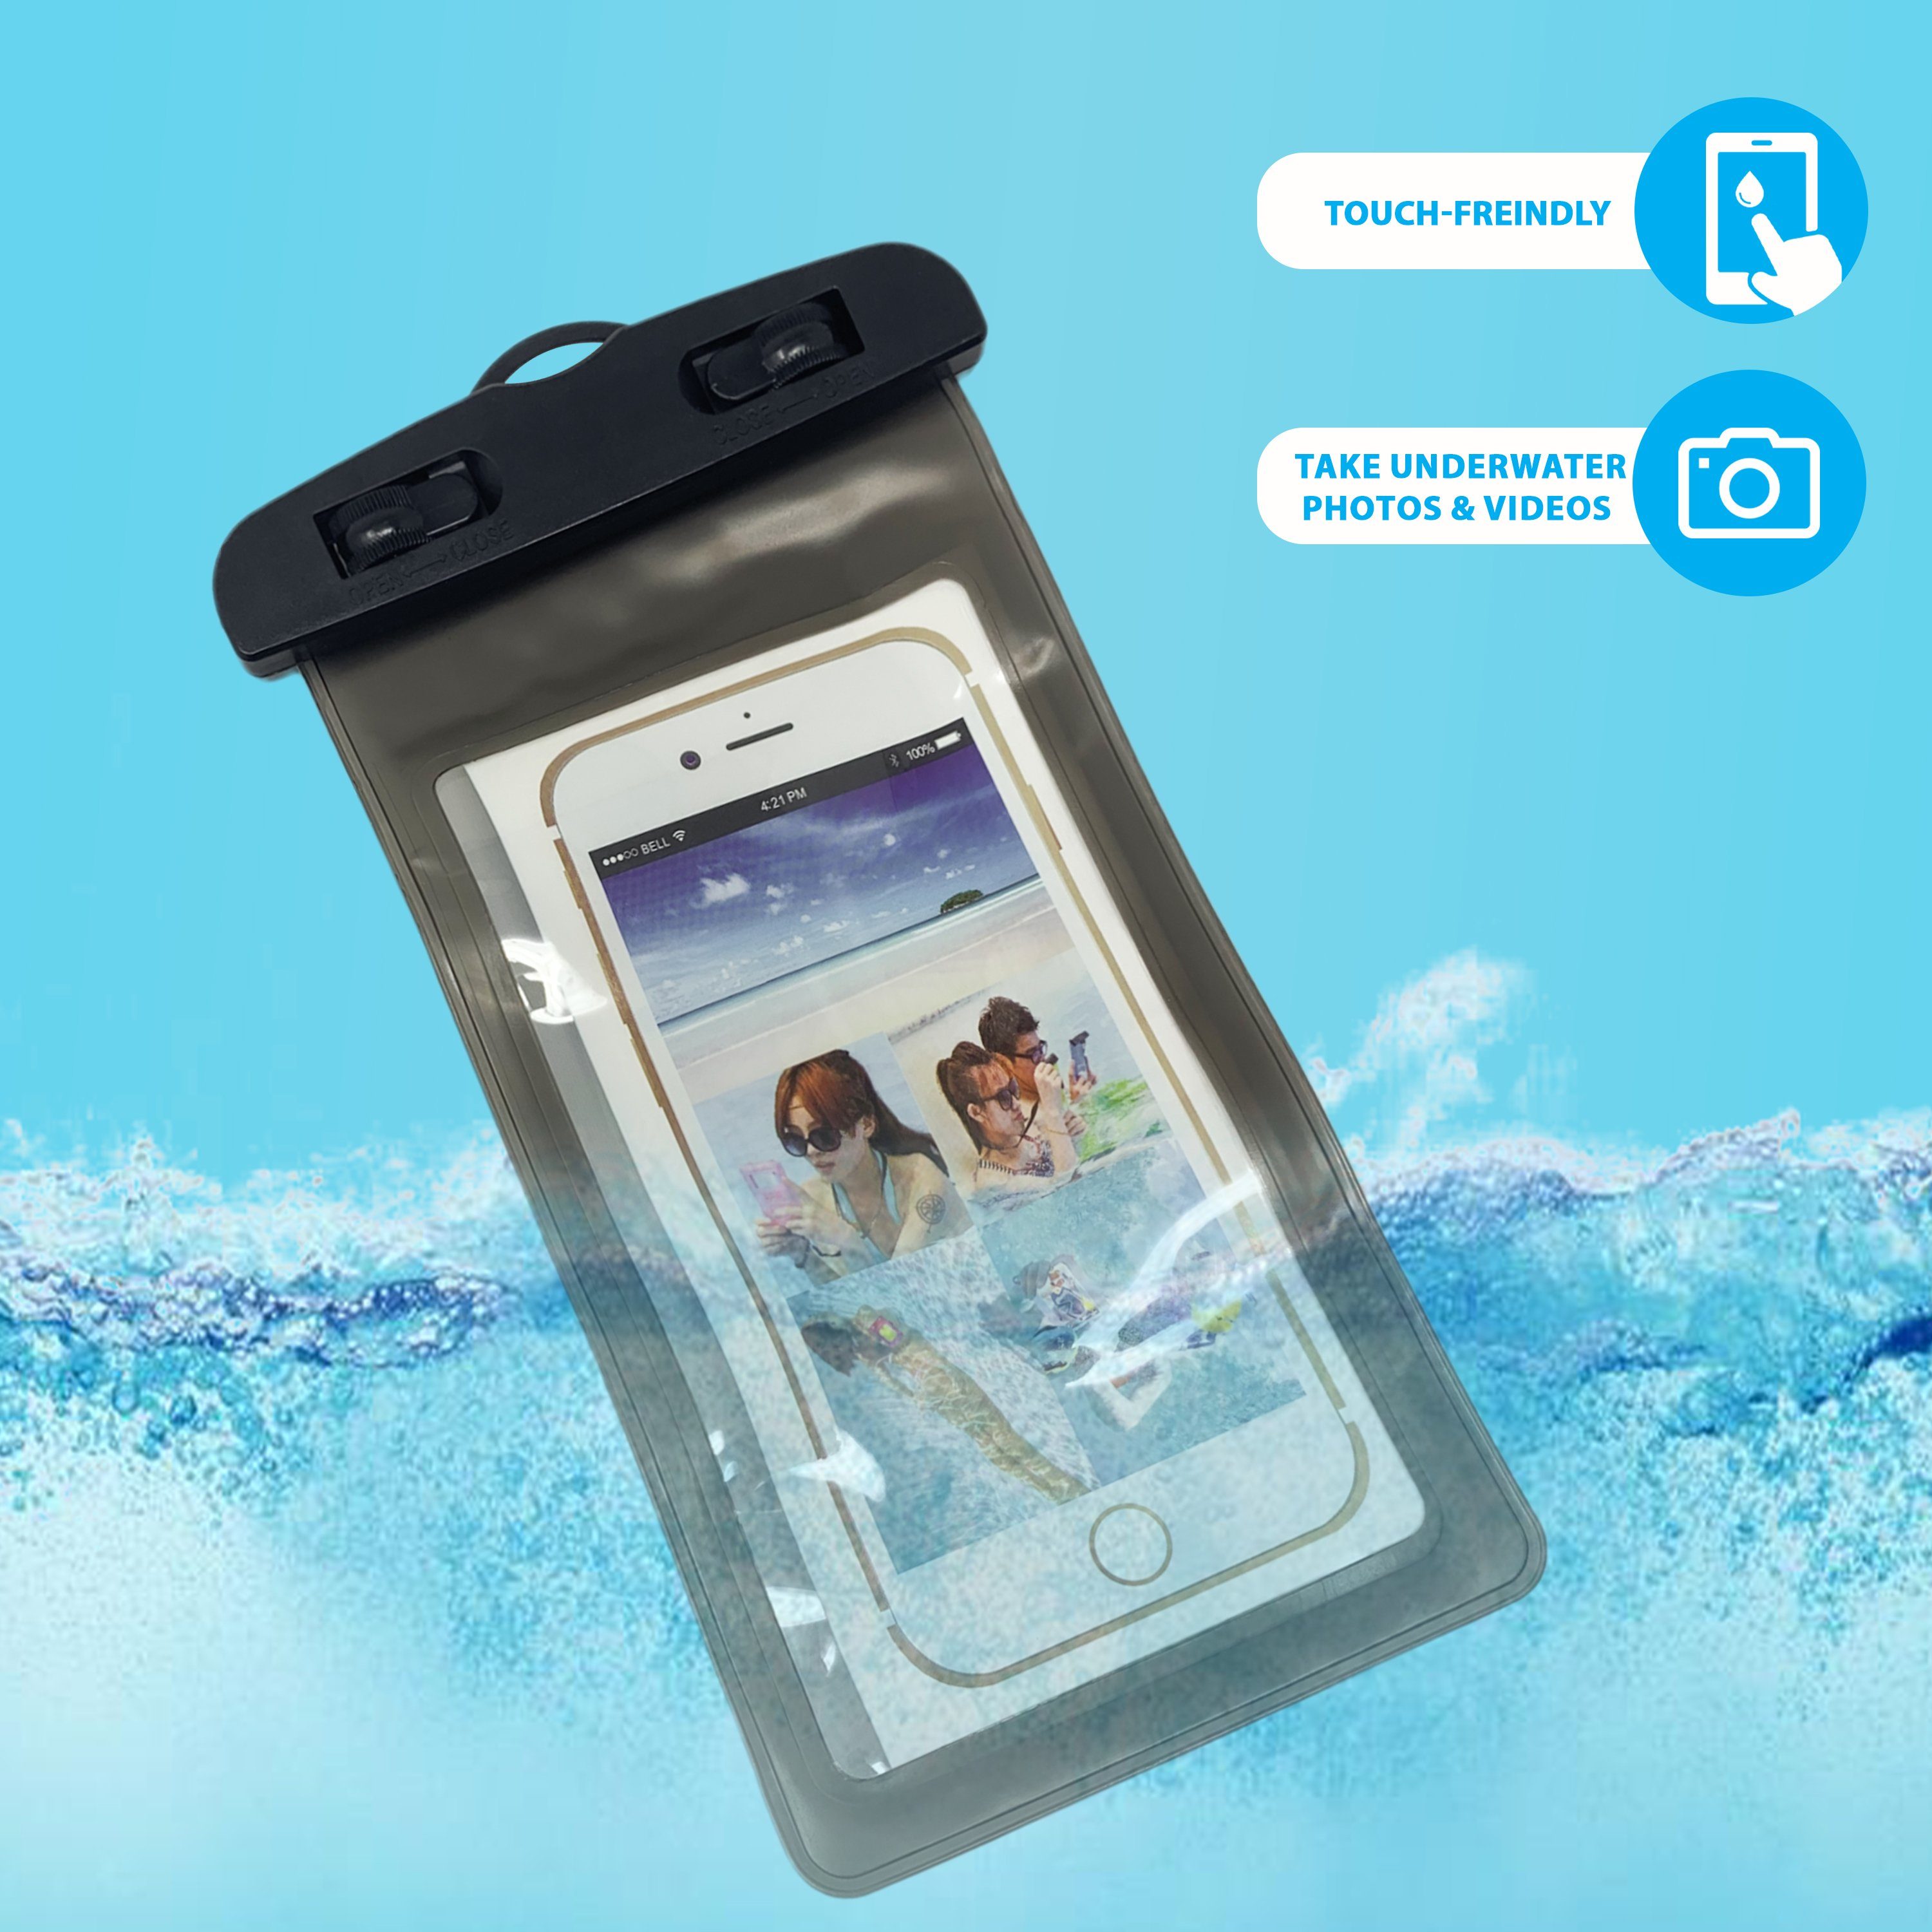 H-basics Handytasche Umhängeband Schwarz Handy - für Schmutz, Hülle Tasche Smartphones Wasserdichte Schnee, alle Sand